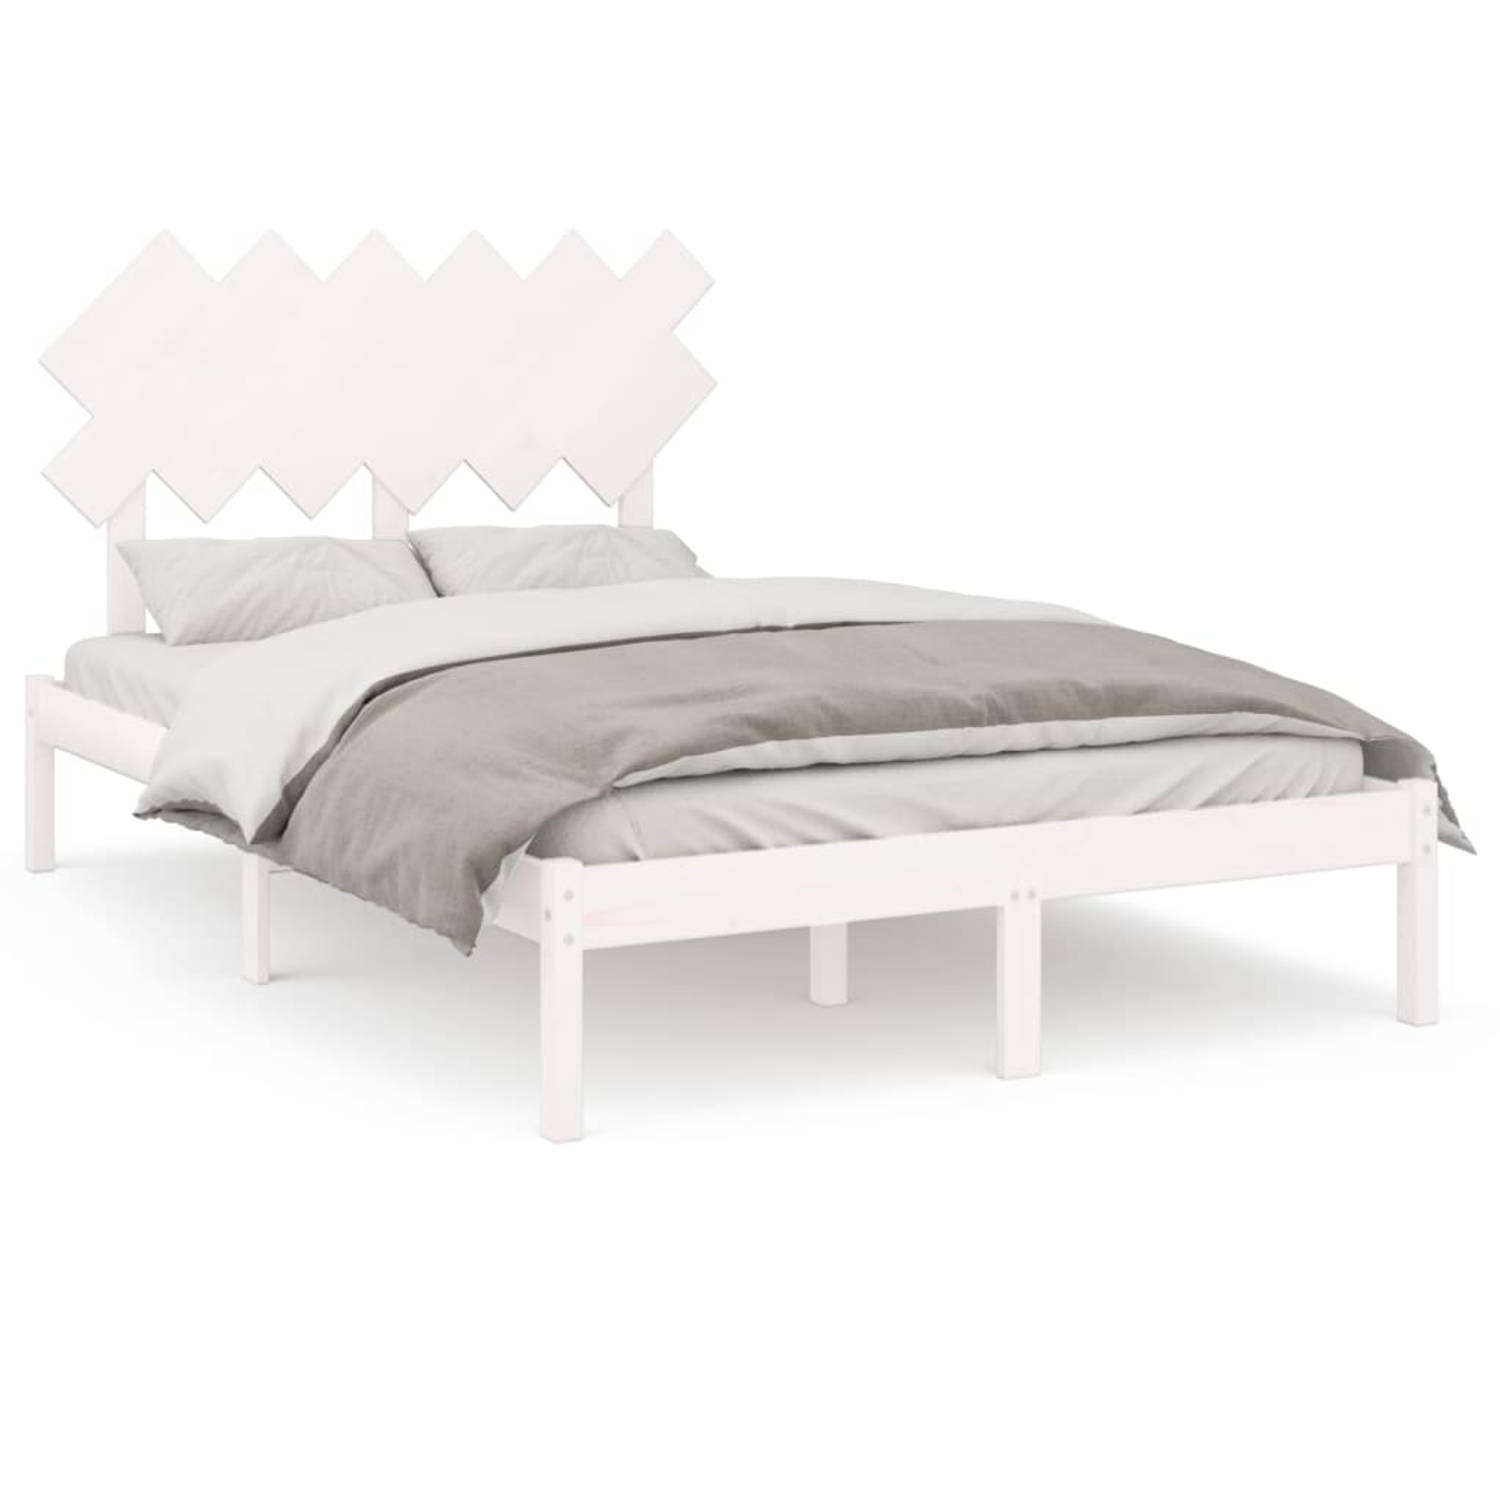 The Living Store Bedframe massief hout wit 120x200 cm - Bedframe - Bedframes - Bed - Bedbodem - Ledikant - Bed Frame - Massief Houten Bedframe - Slaapmeubel - Tweepersoonsbed - Bed